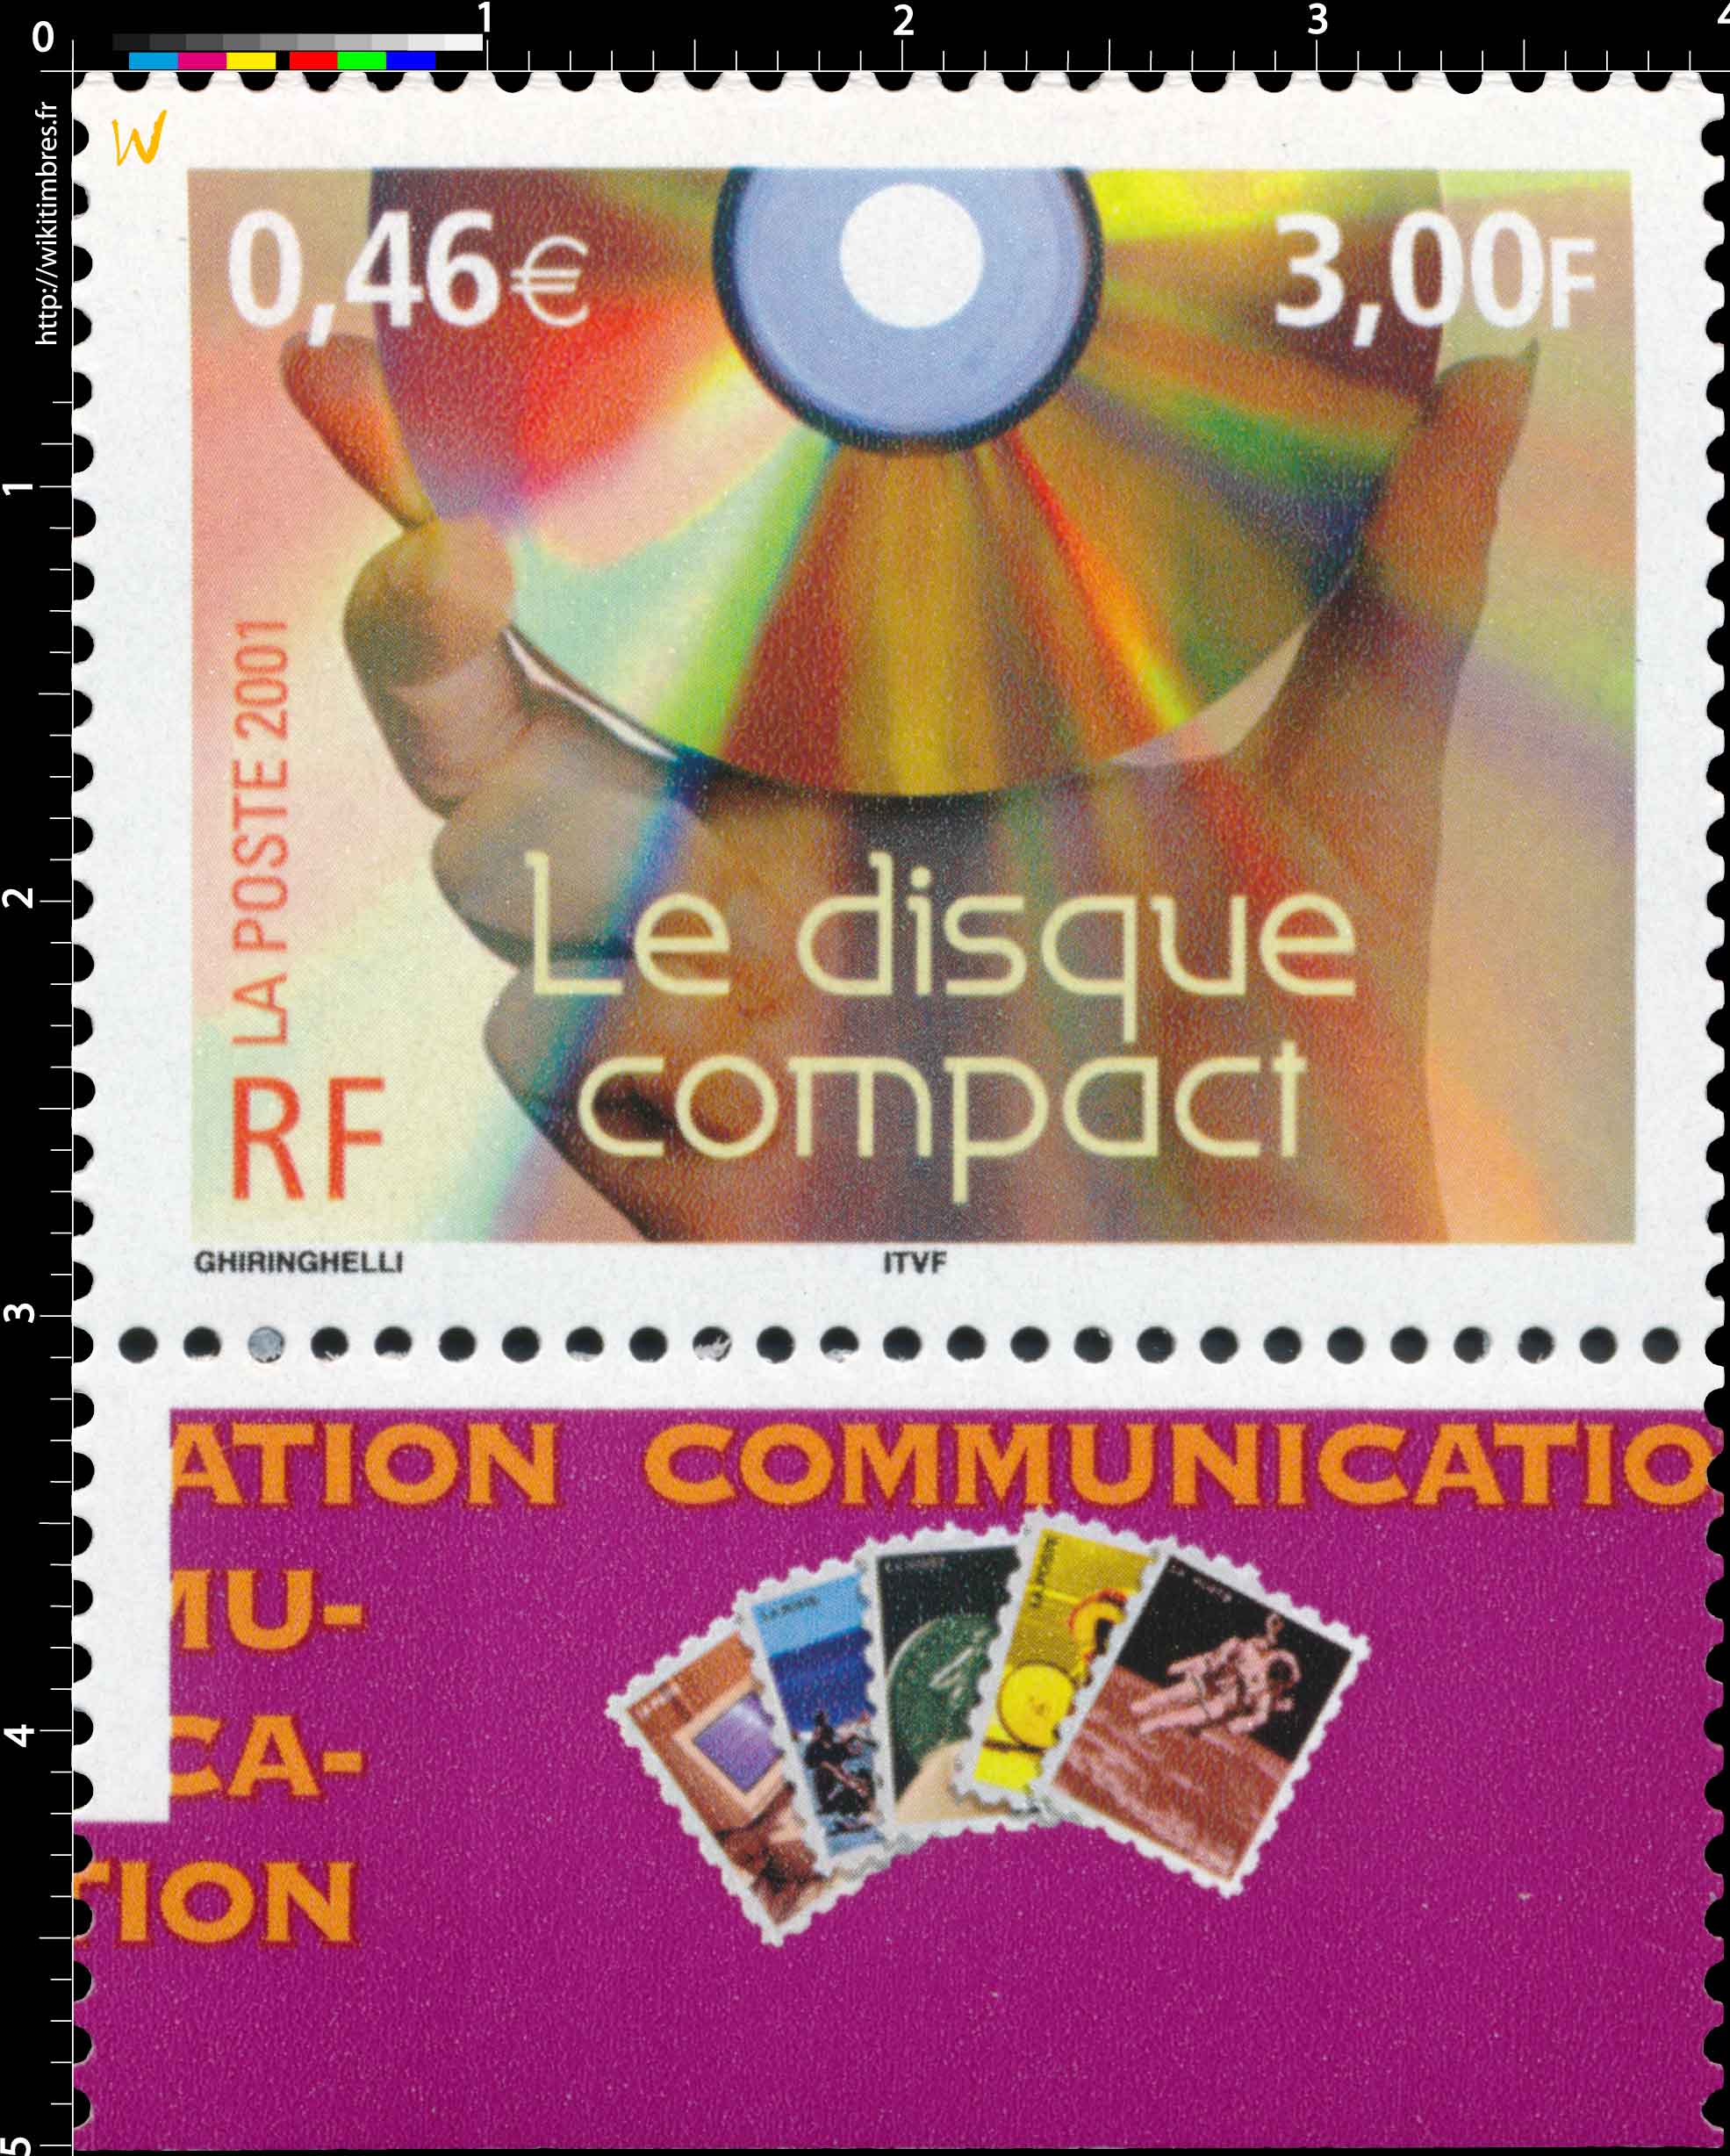 2001 Le disque compact